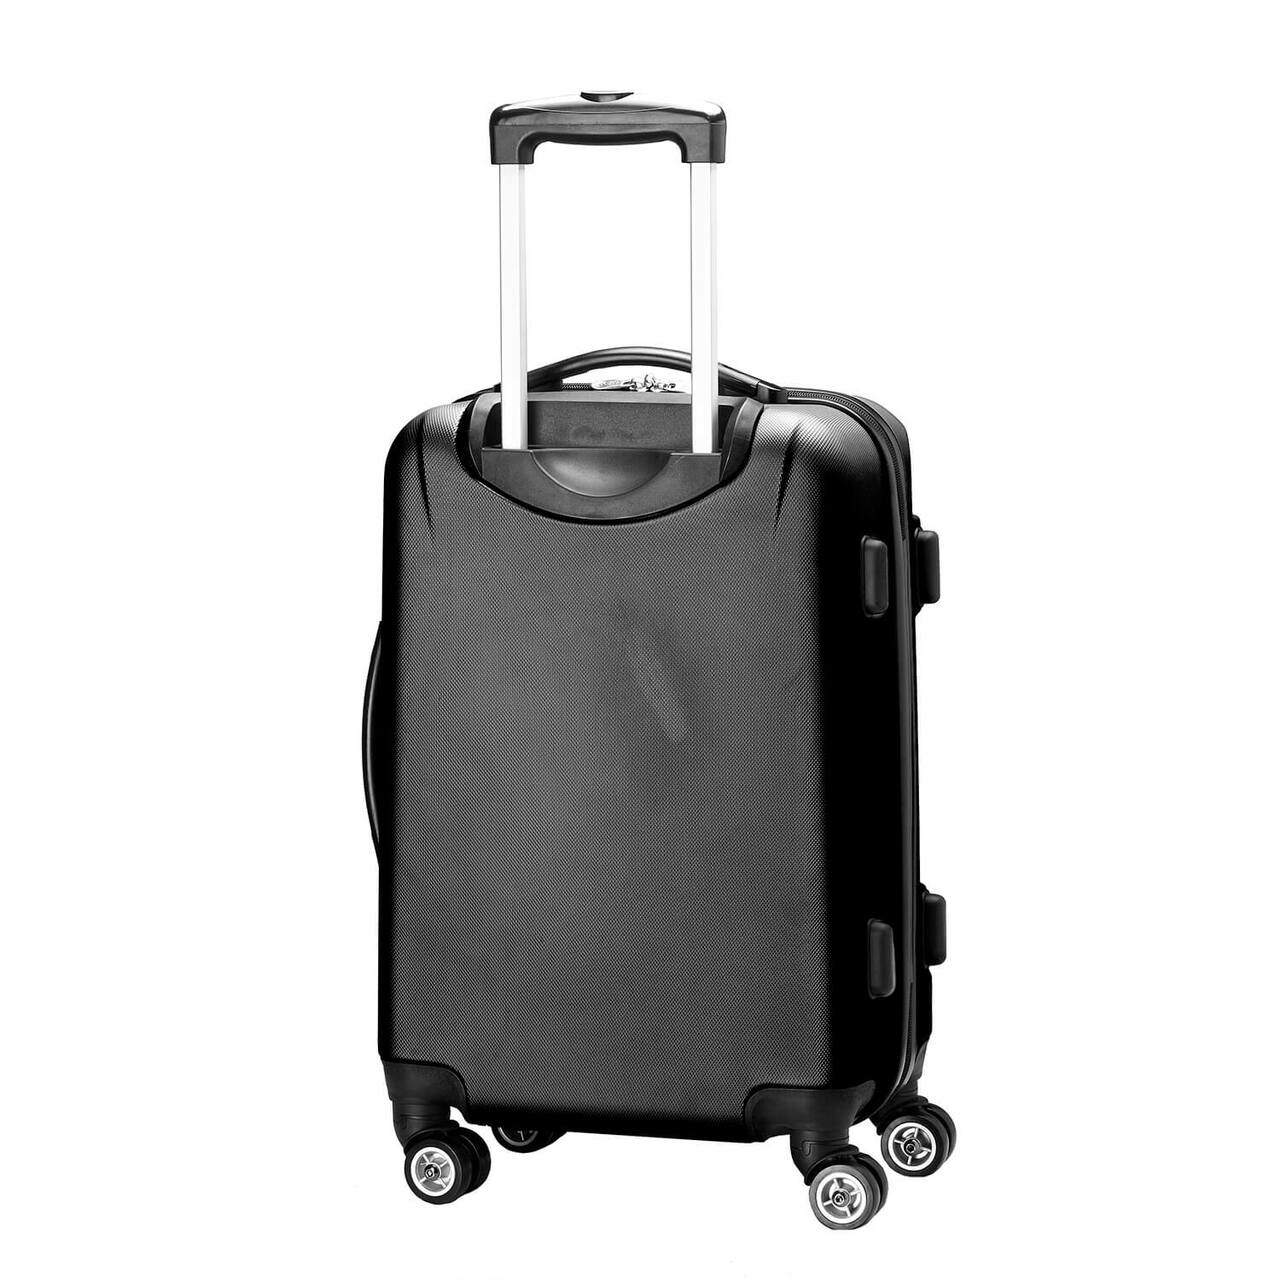 Columbus Blue Jackets 20" Hardcase Luggage Carry-on Spinner